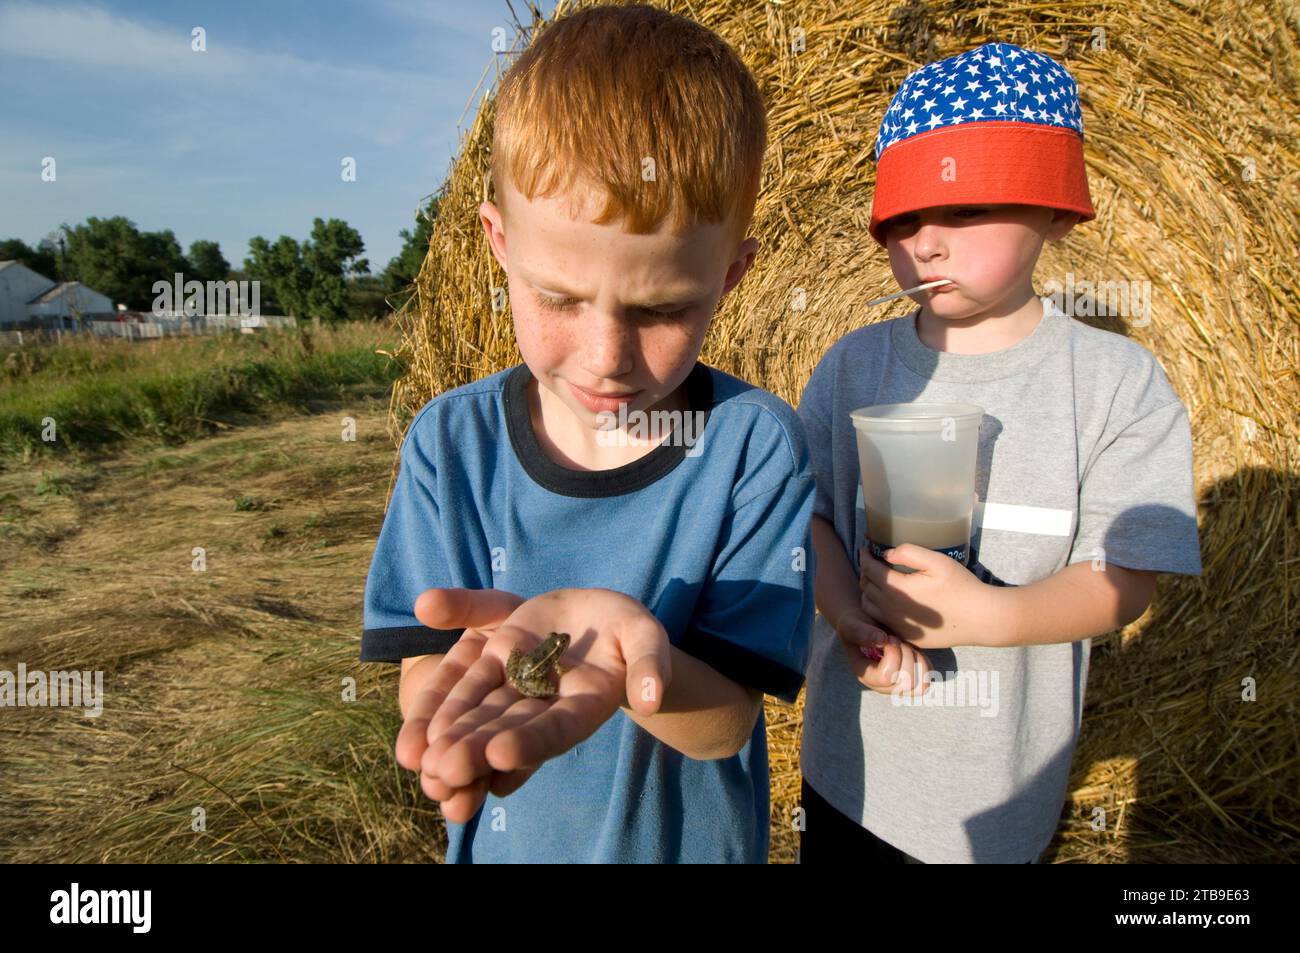 De jeunes garçons regardent une grenouille léopard des Plaines (Rana blairi) devant une balle de foin dans un champ de ferme ; Greenleaf, Kansas, États-Unis d'Amérique Banque D'Images